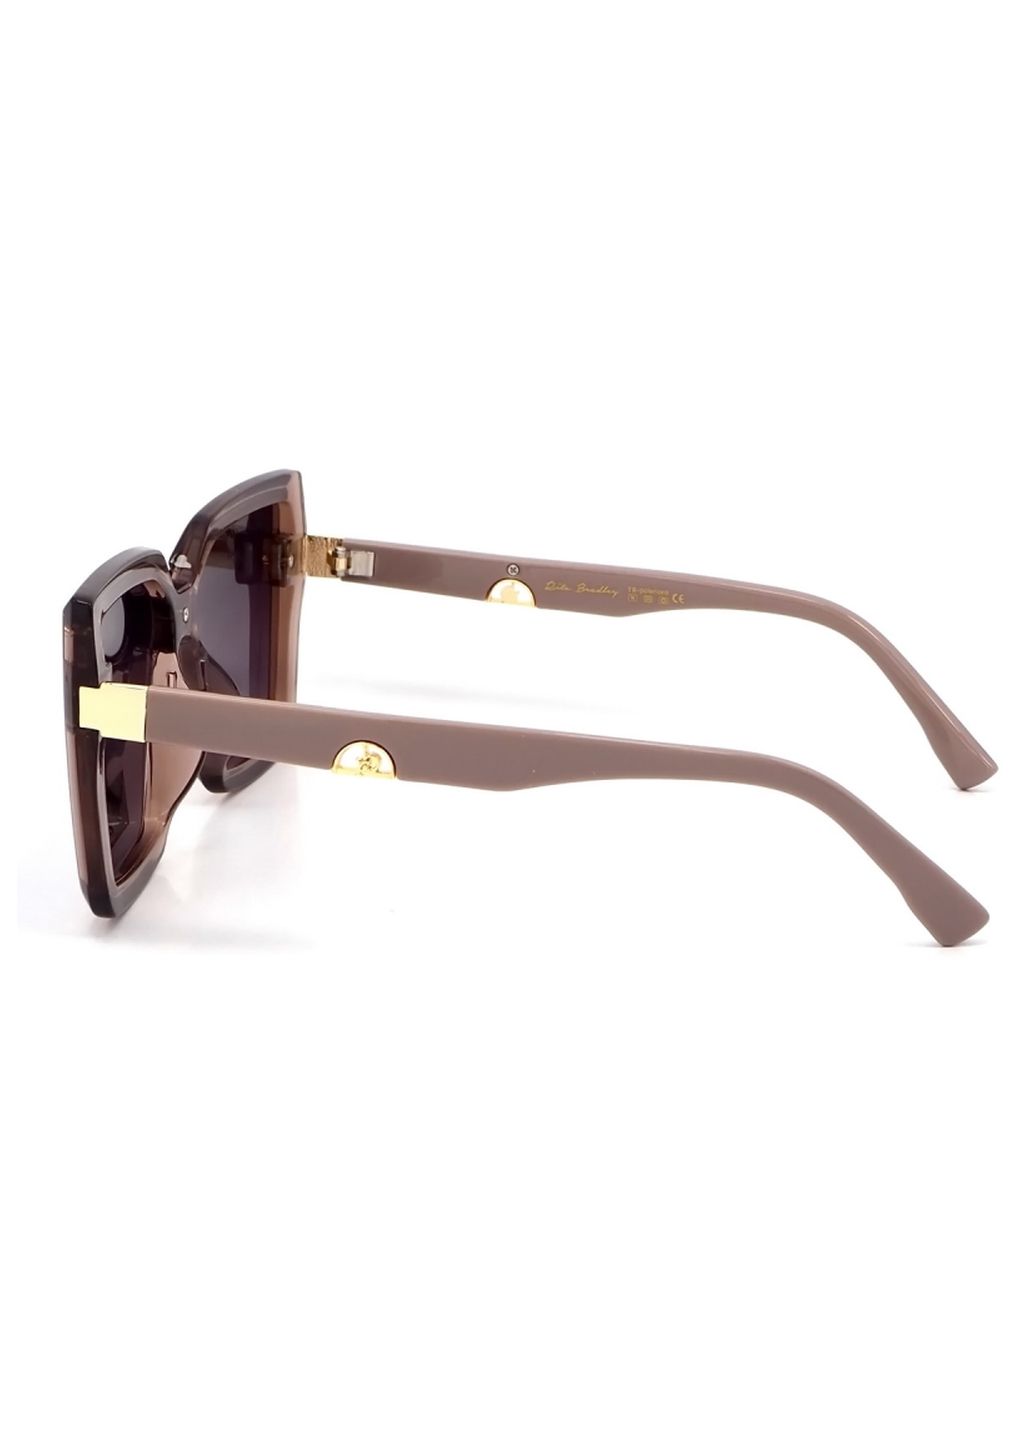 Купить Женские солнцезащитные очки Rita Bradley с поляризацией RB728 112065 в интернет-магазине